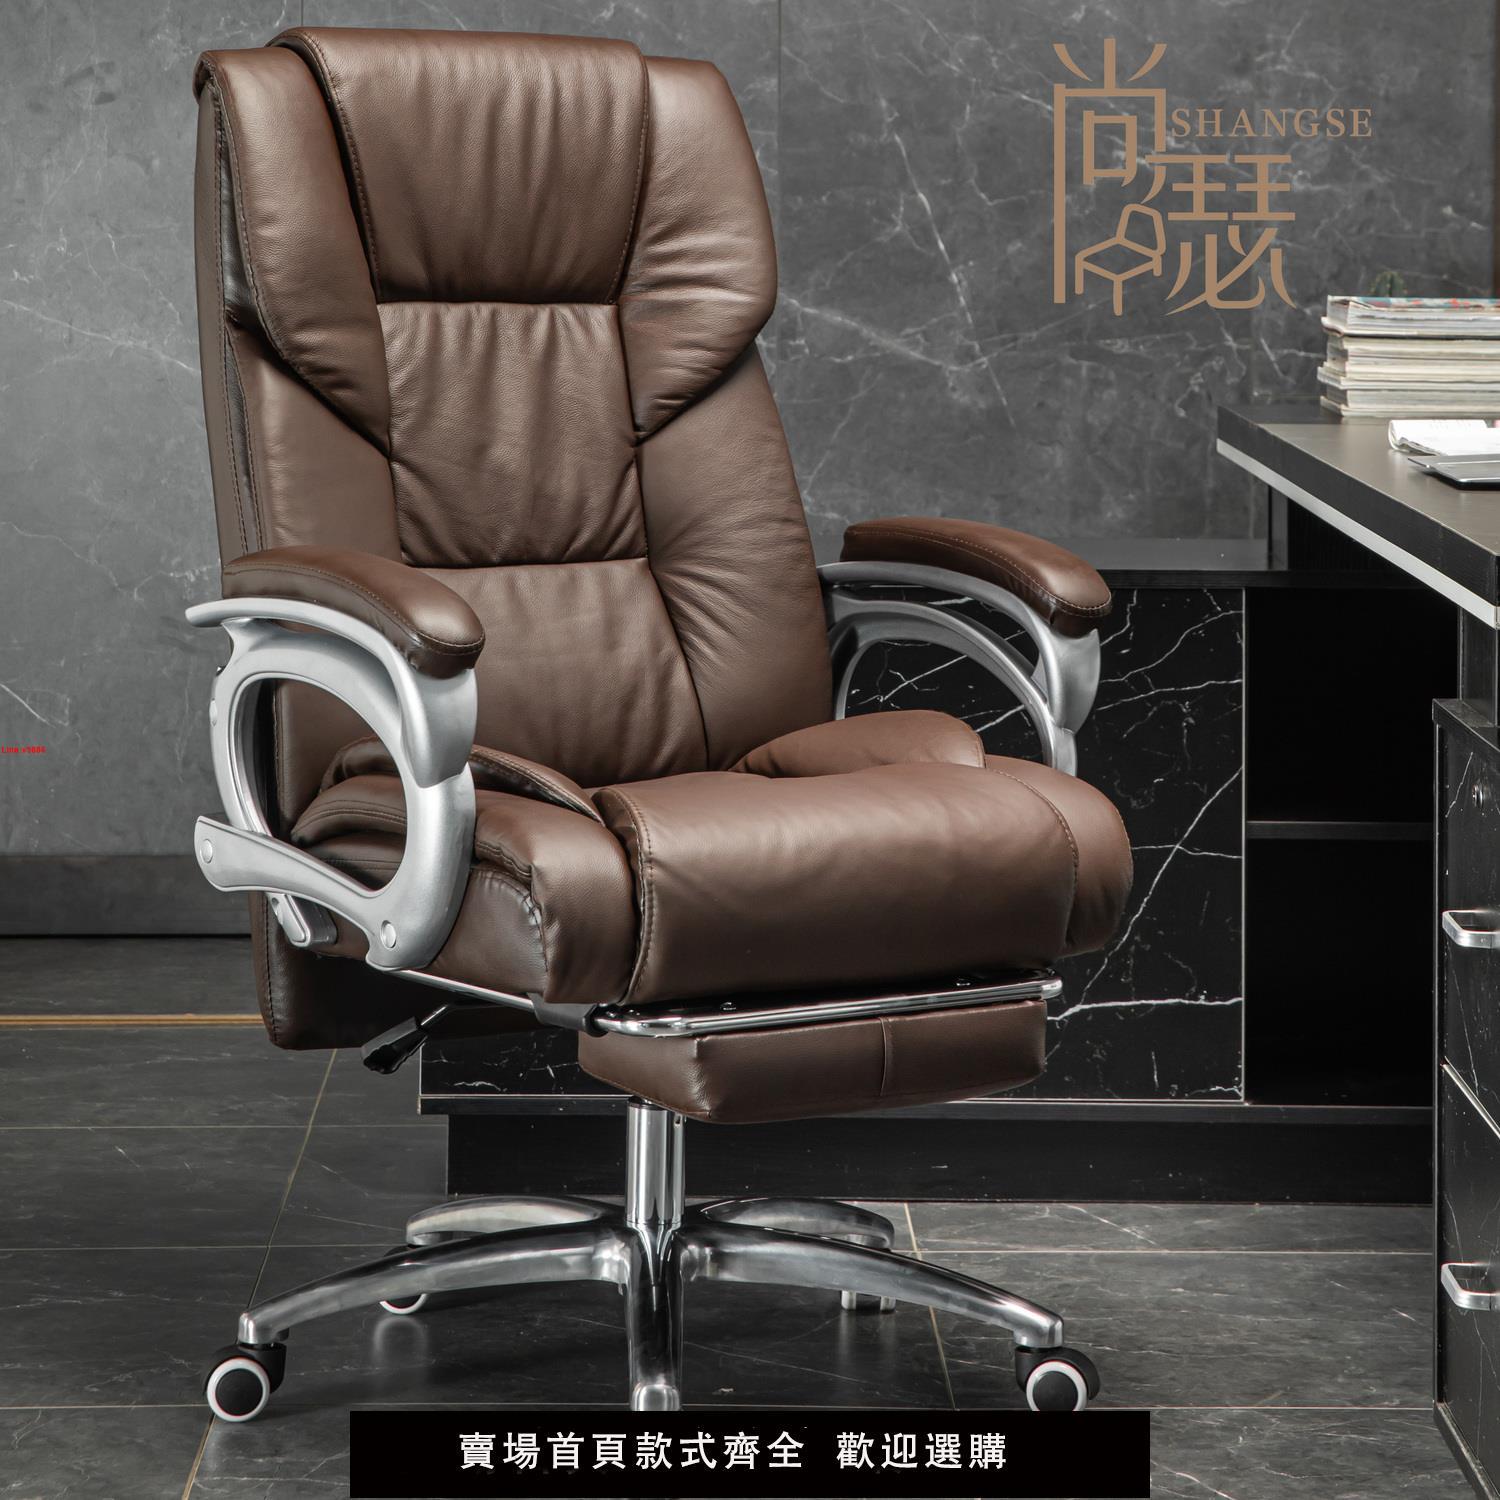 【台灣公司 超低價】電腦椅家用舒適按摩真皮老板椅高檔轉椅辦公椅子可躺商務辦公室椅